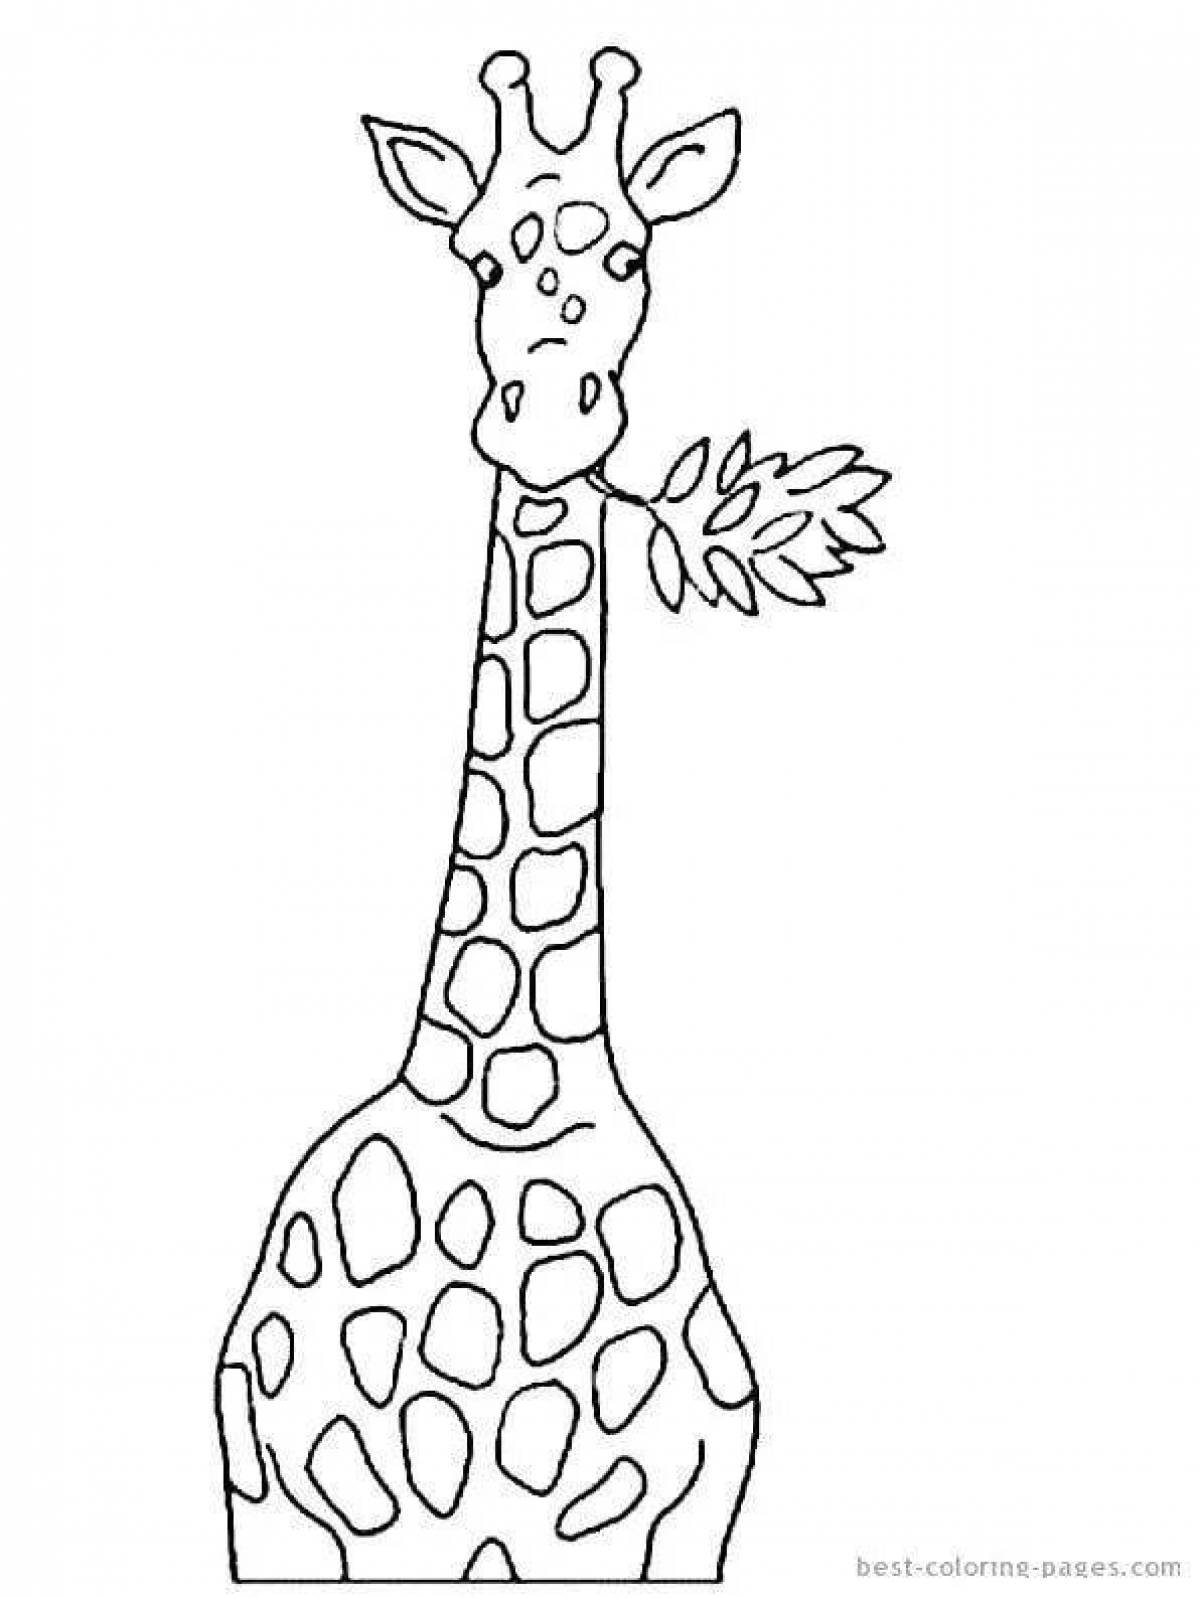 Картинки жирафа для детей раскраска